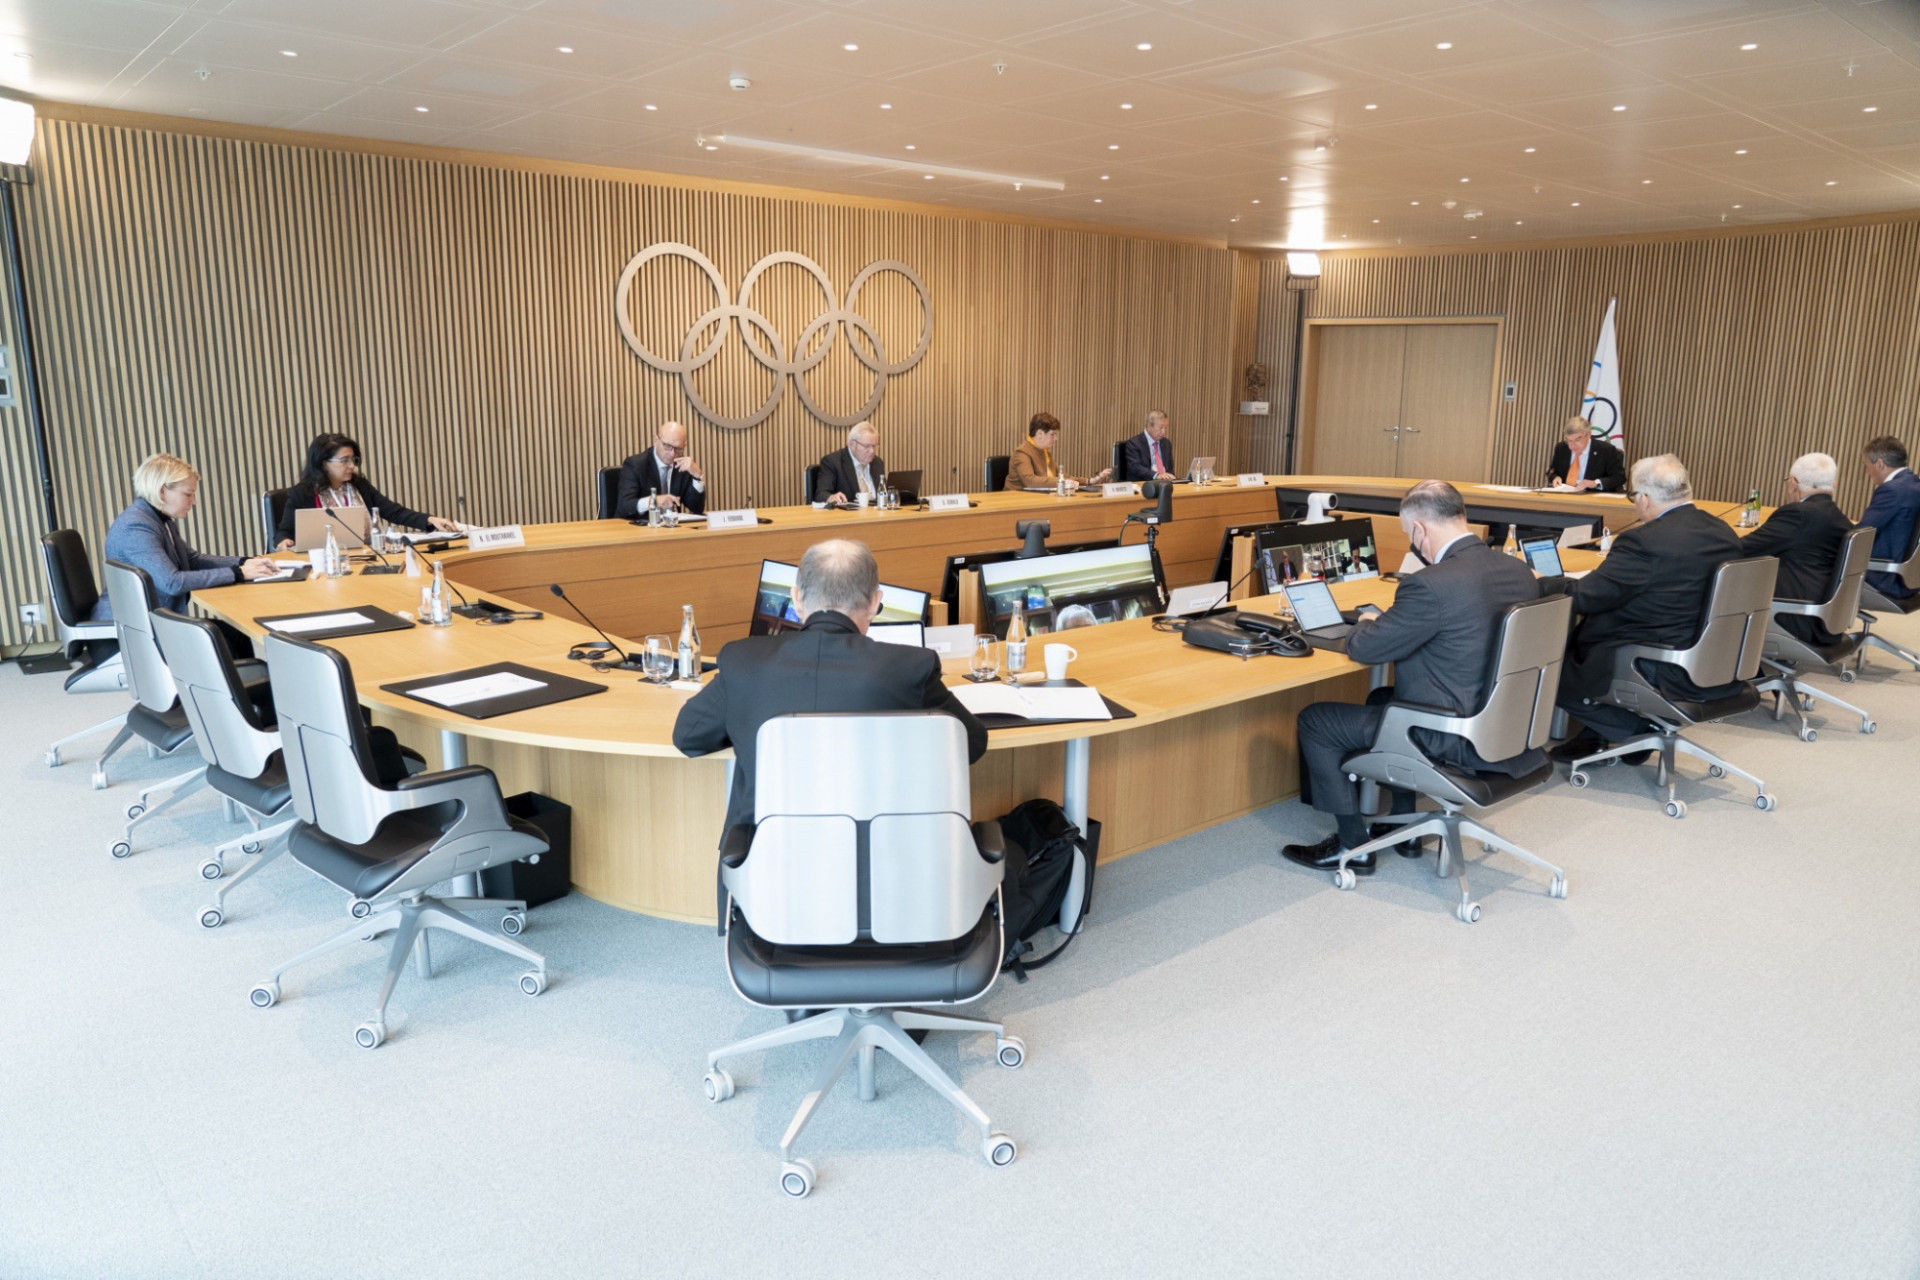 Объекты Олимпийских игр Пекин-2022 завершены и утверждены международными федерациями